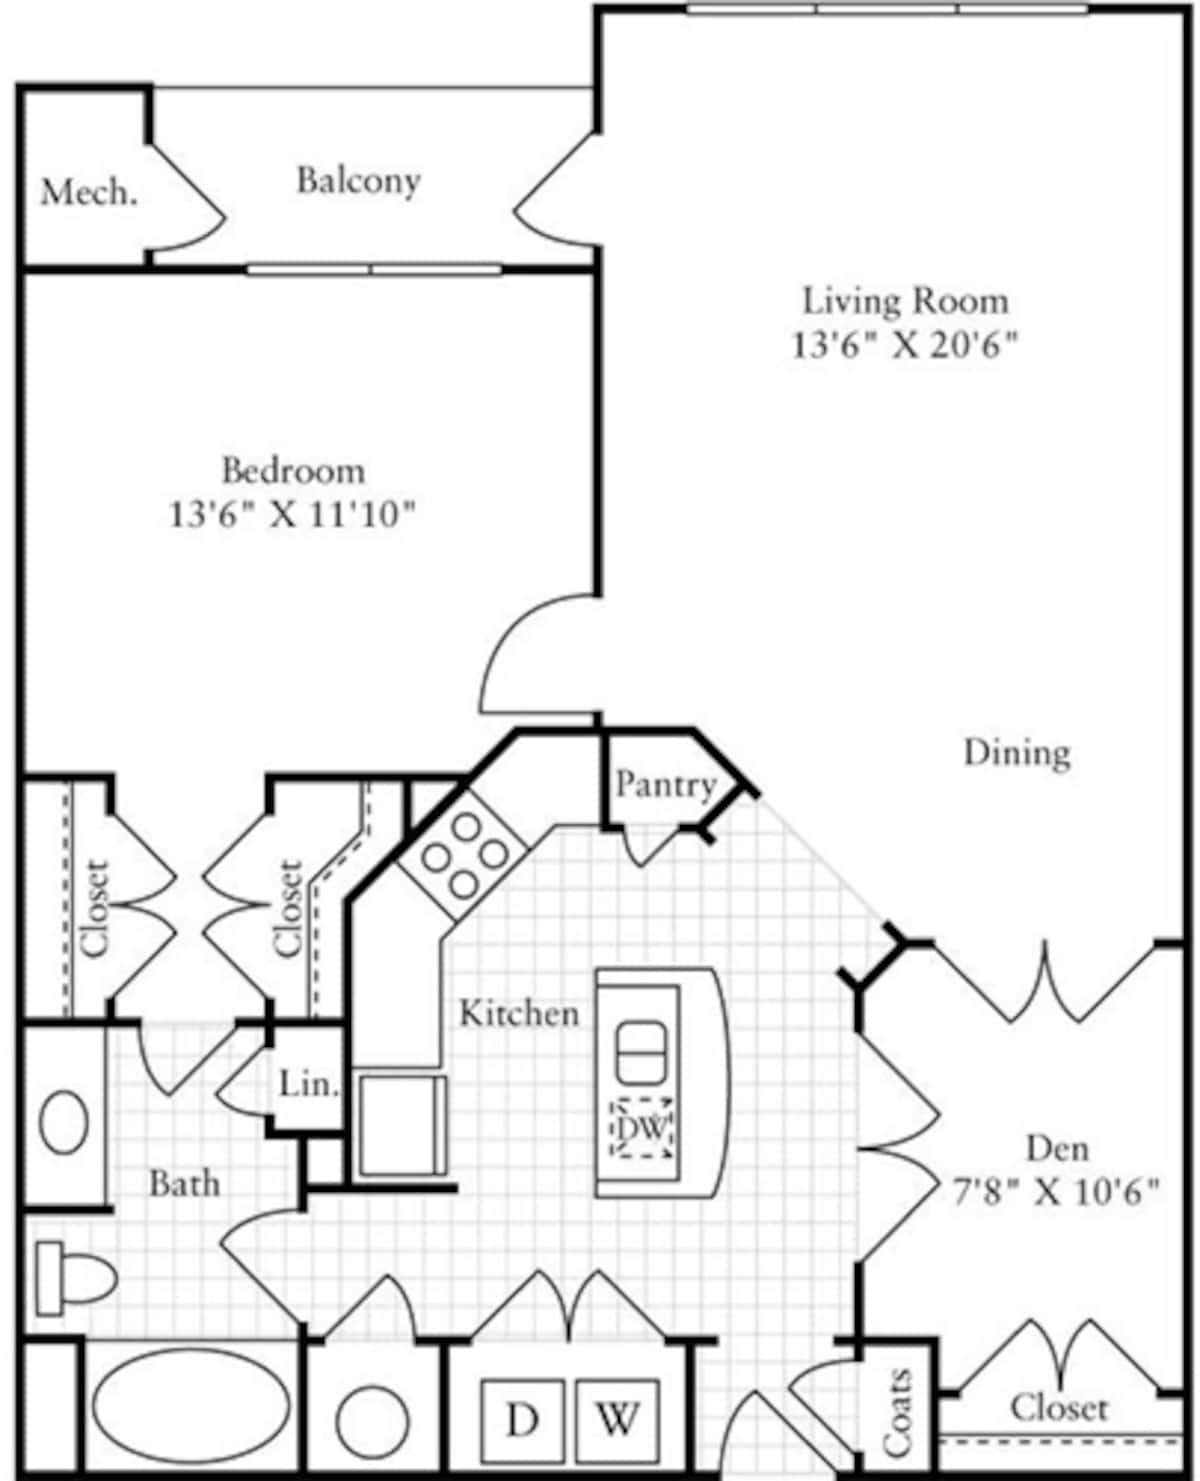 Floorplan diagram for 1 Bedroom F, showing 1 bedroom